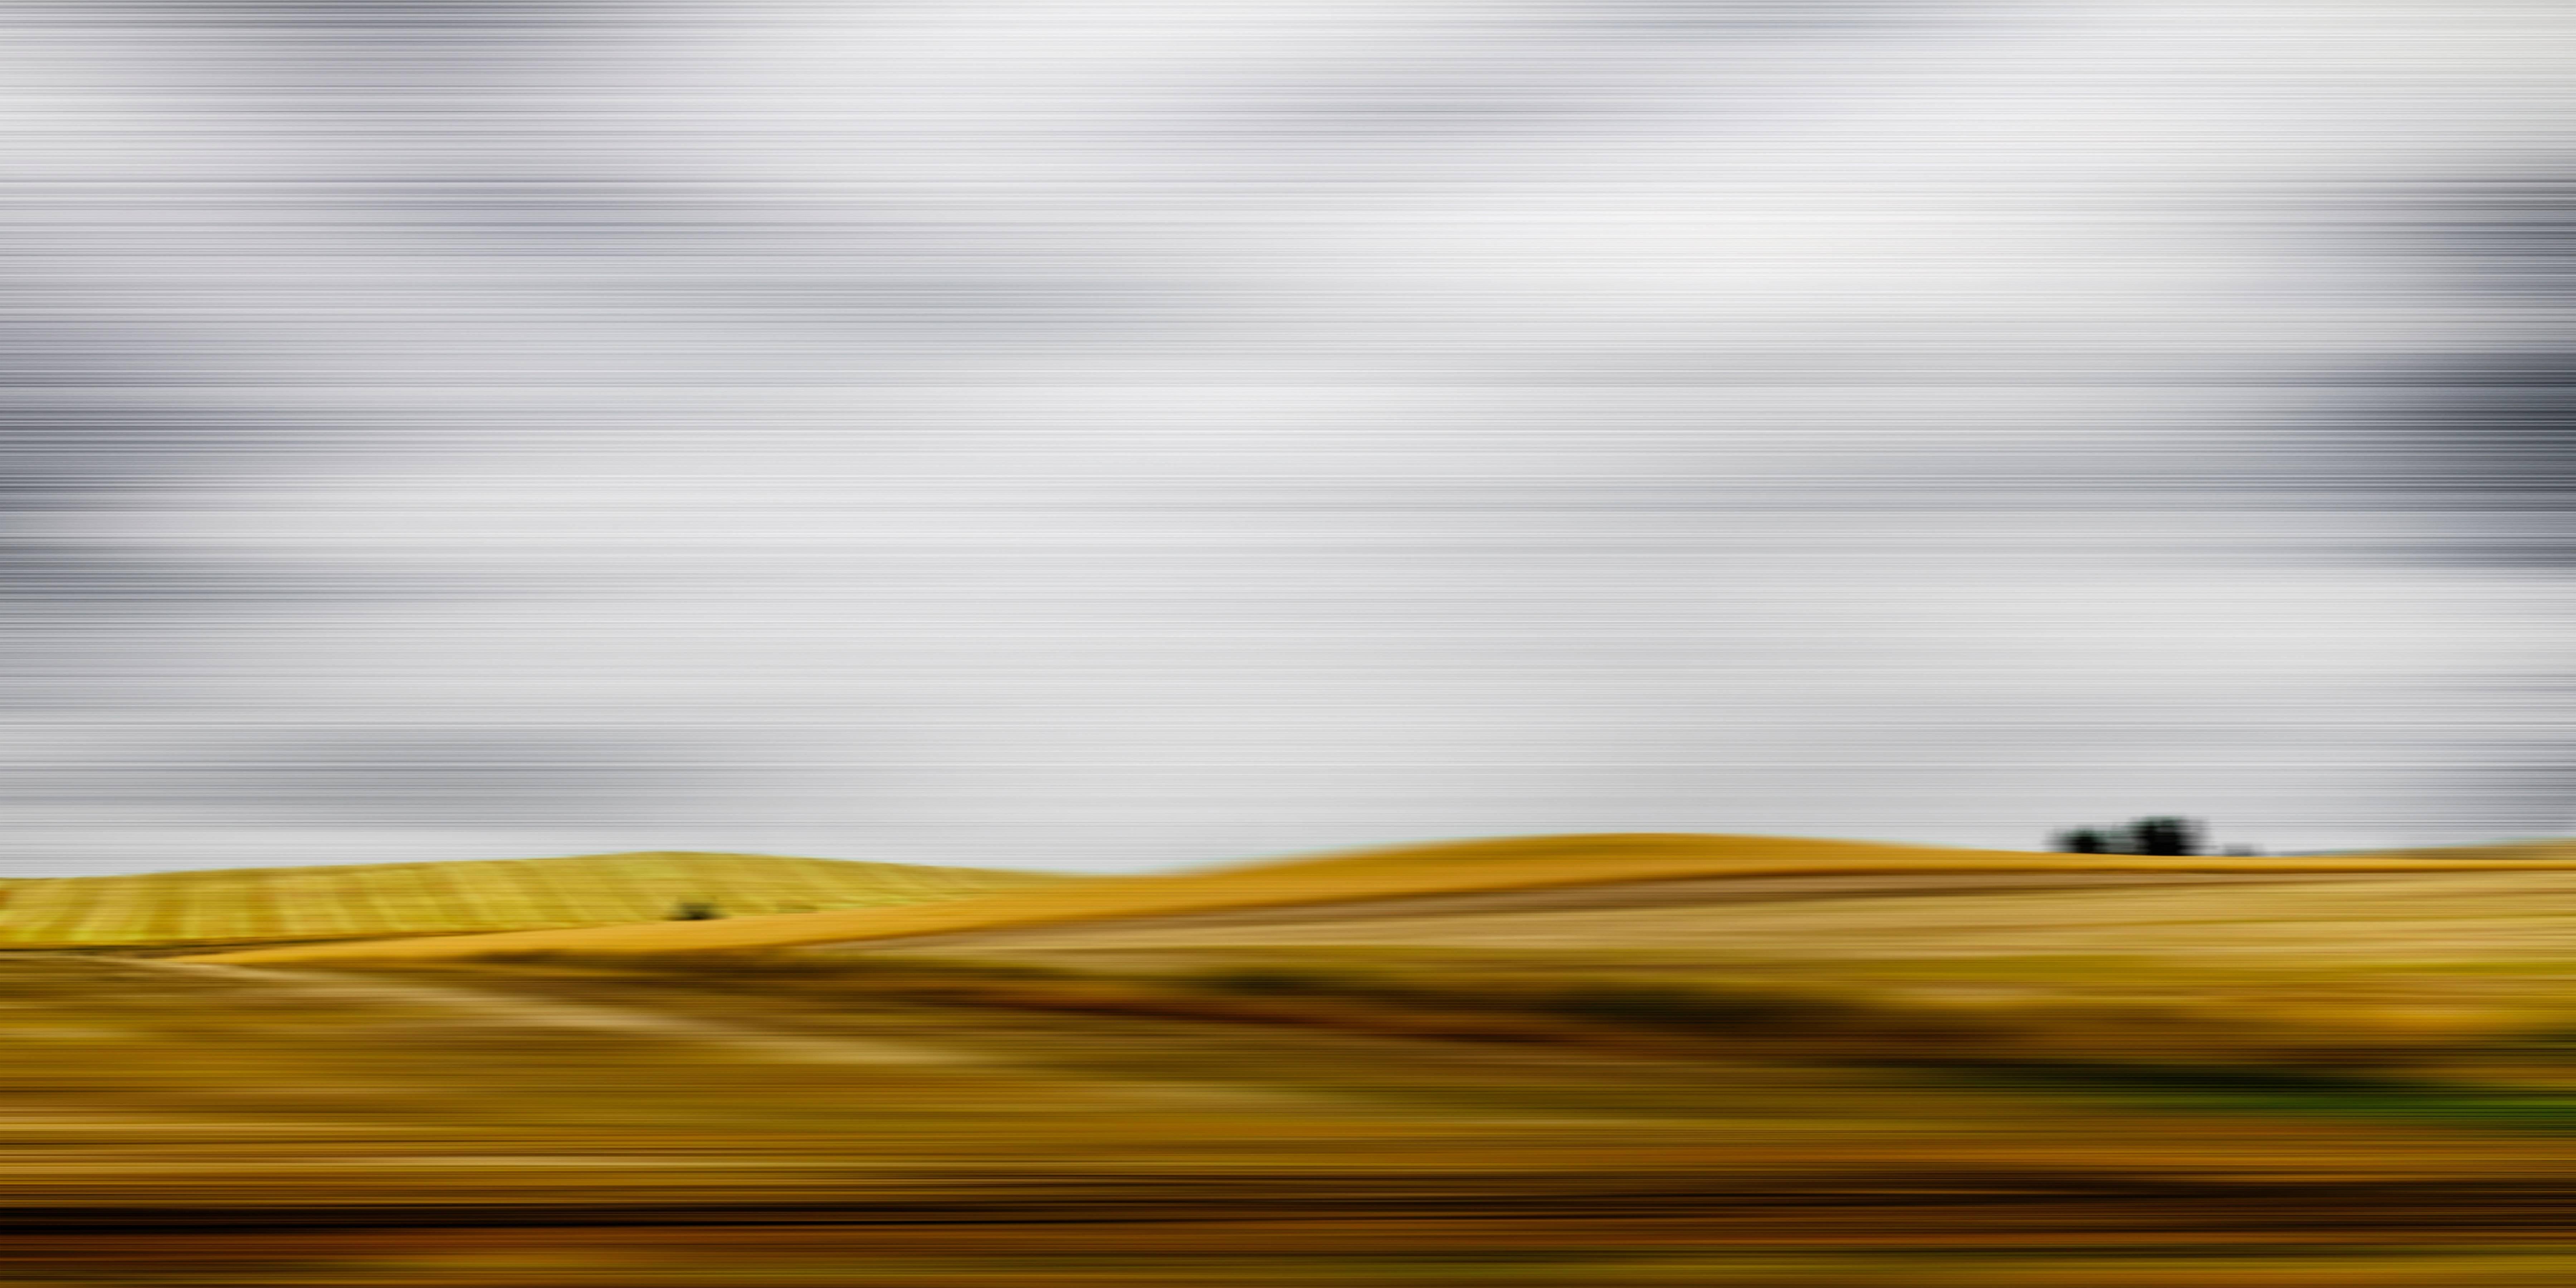 Etienne Labbe Landscape Photograph - Fields of Wheat